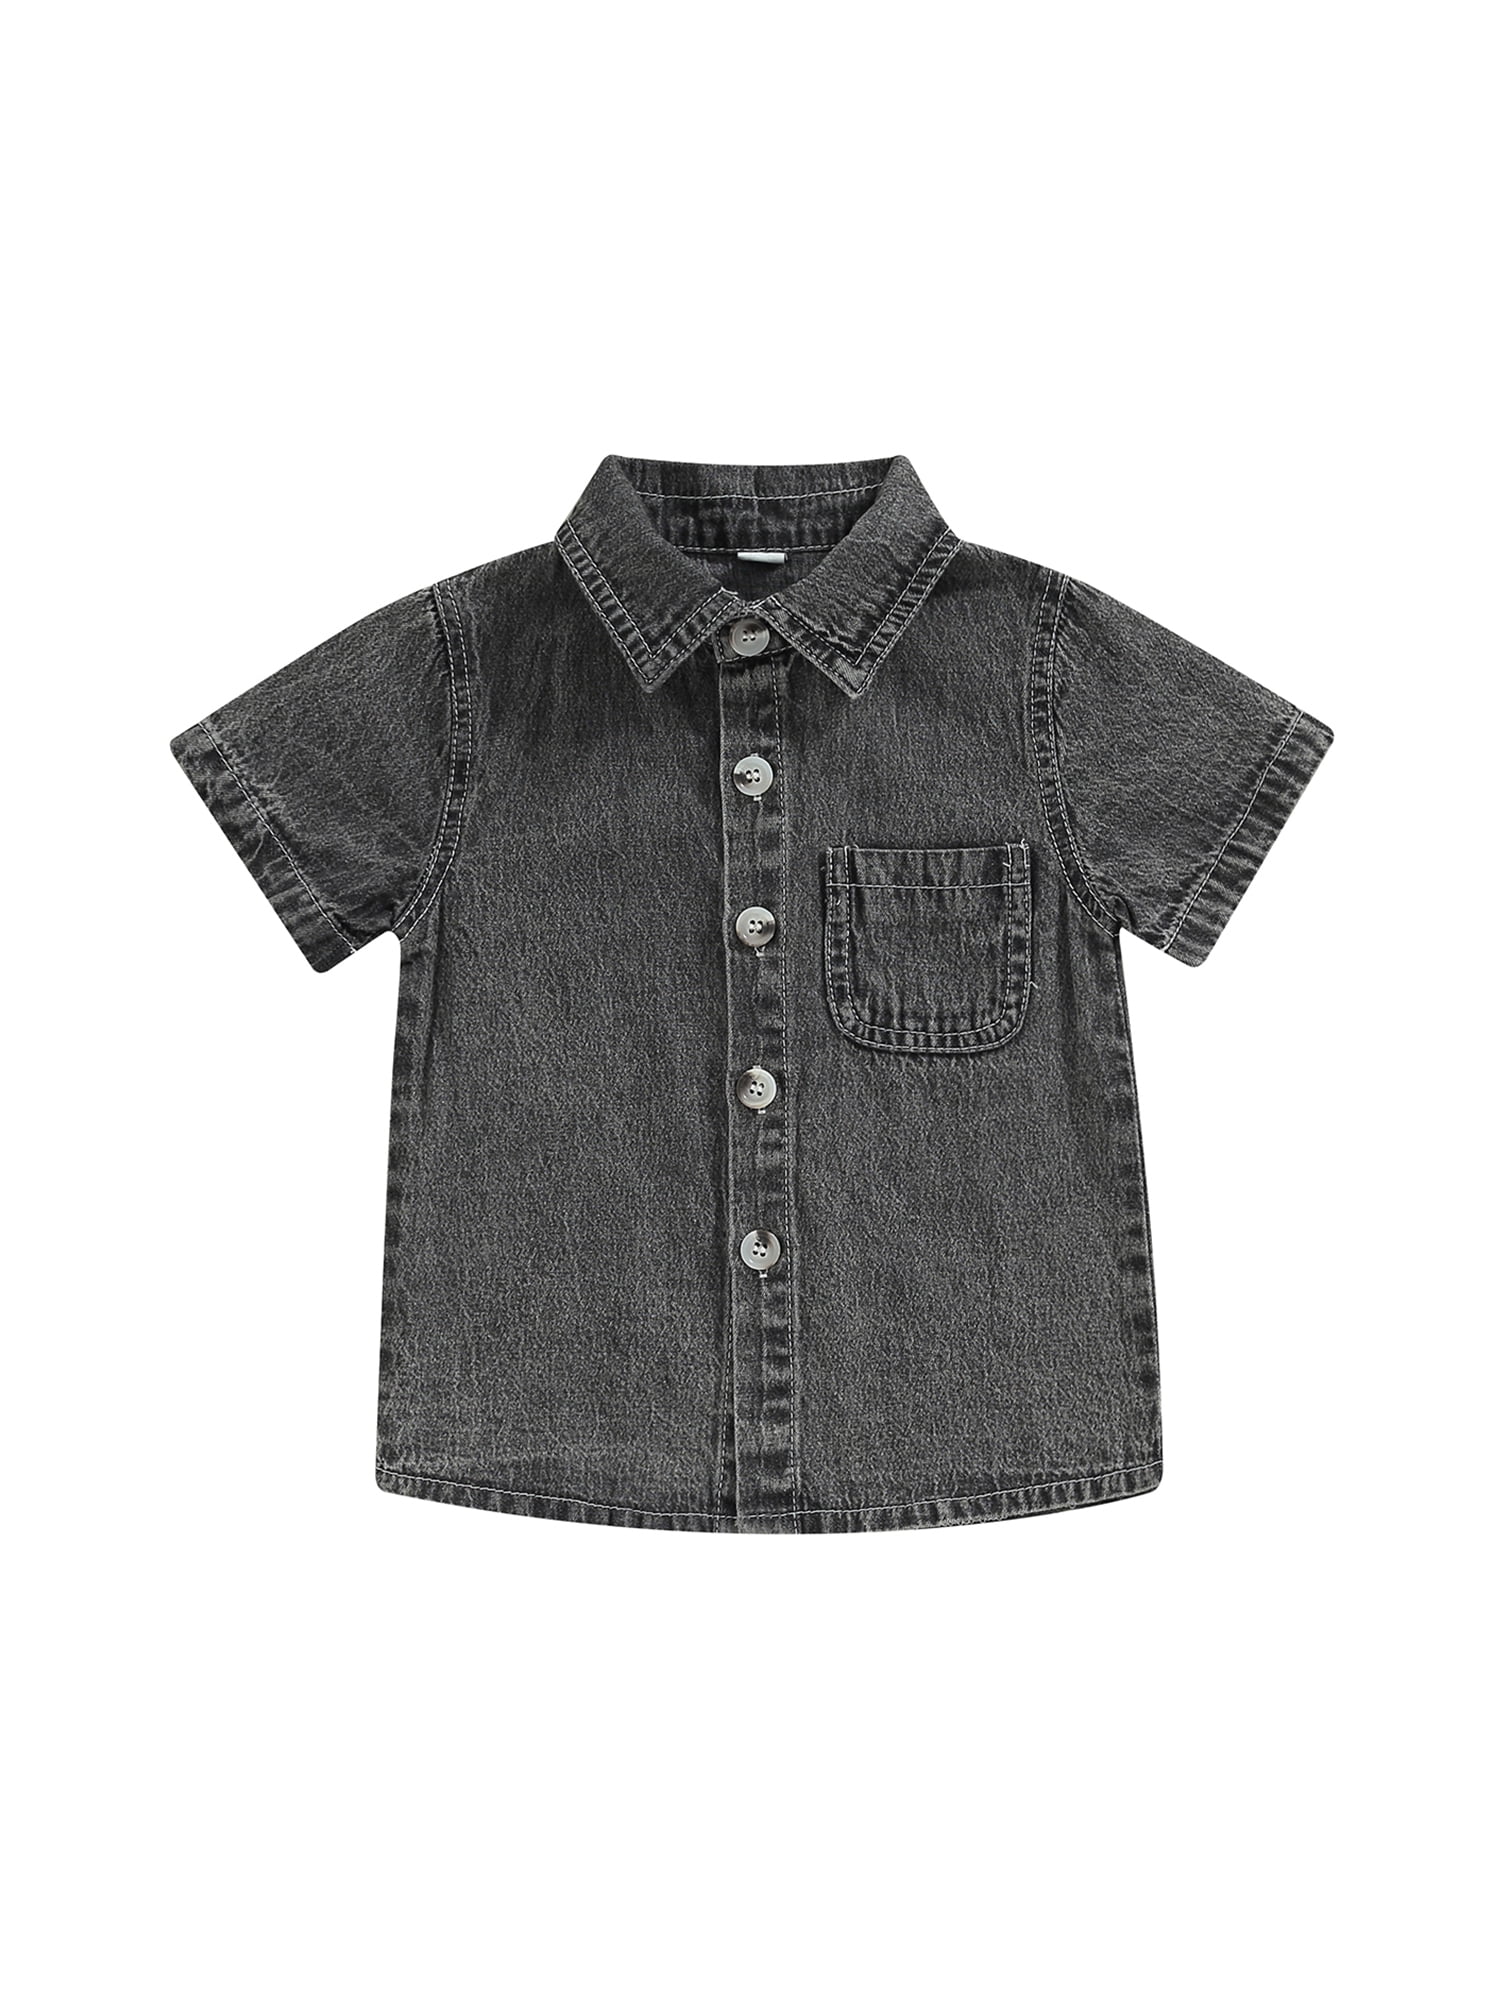 Baby Gap Boys Chambray Denim Shirt 12-18M Used – Noiram Kids Boutique